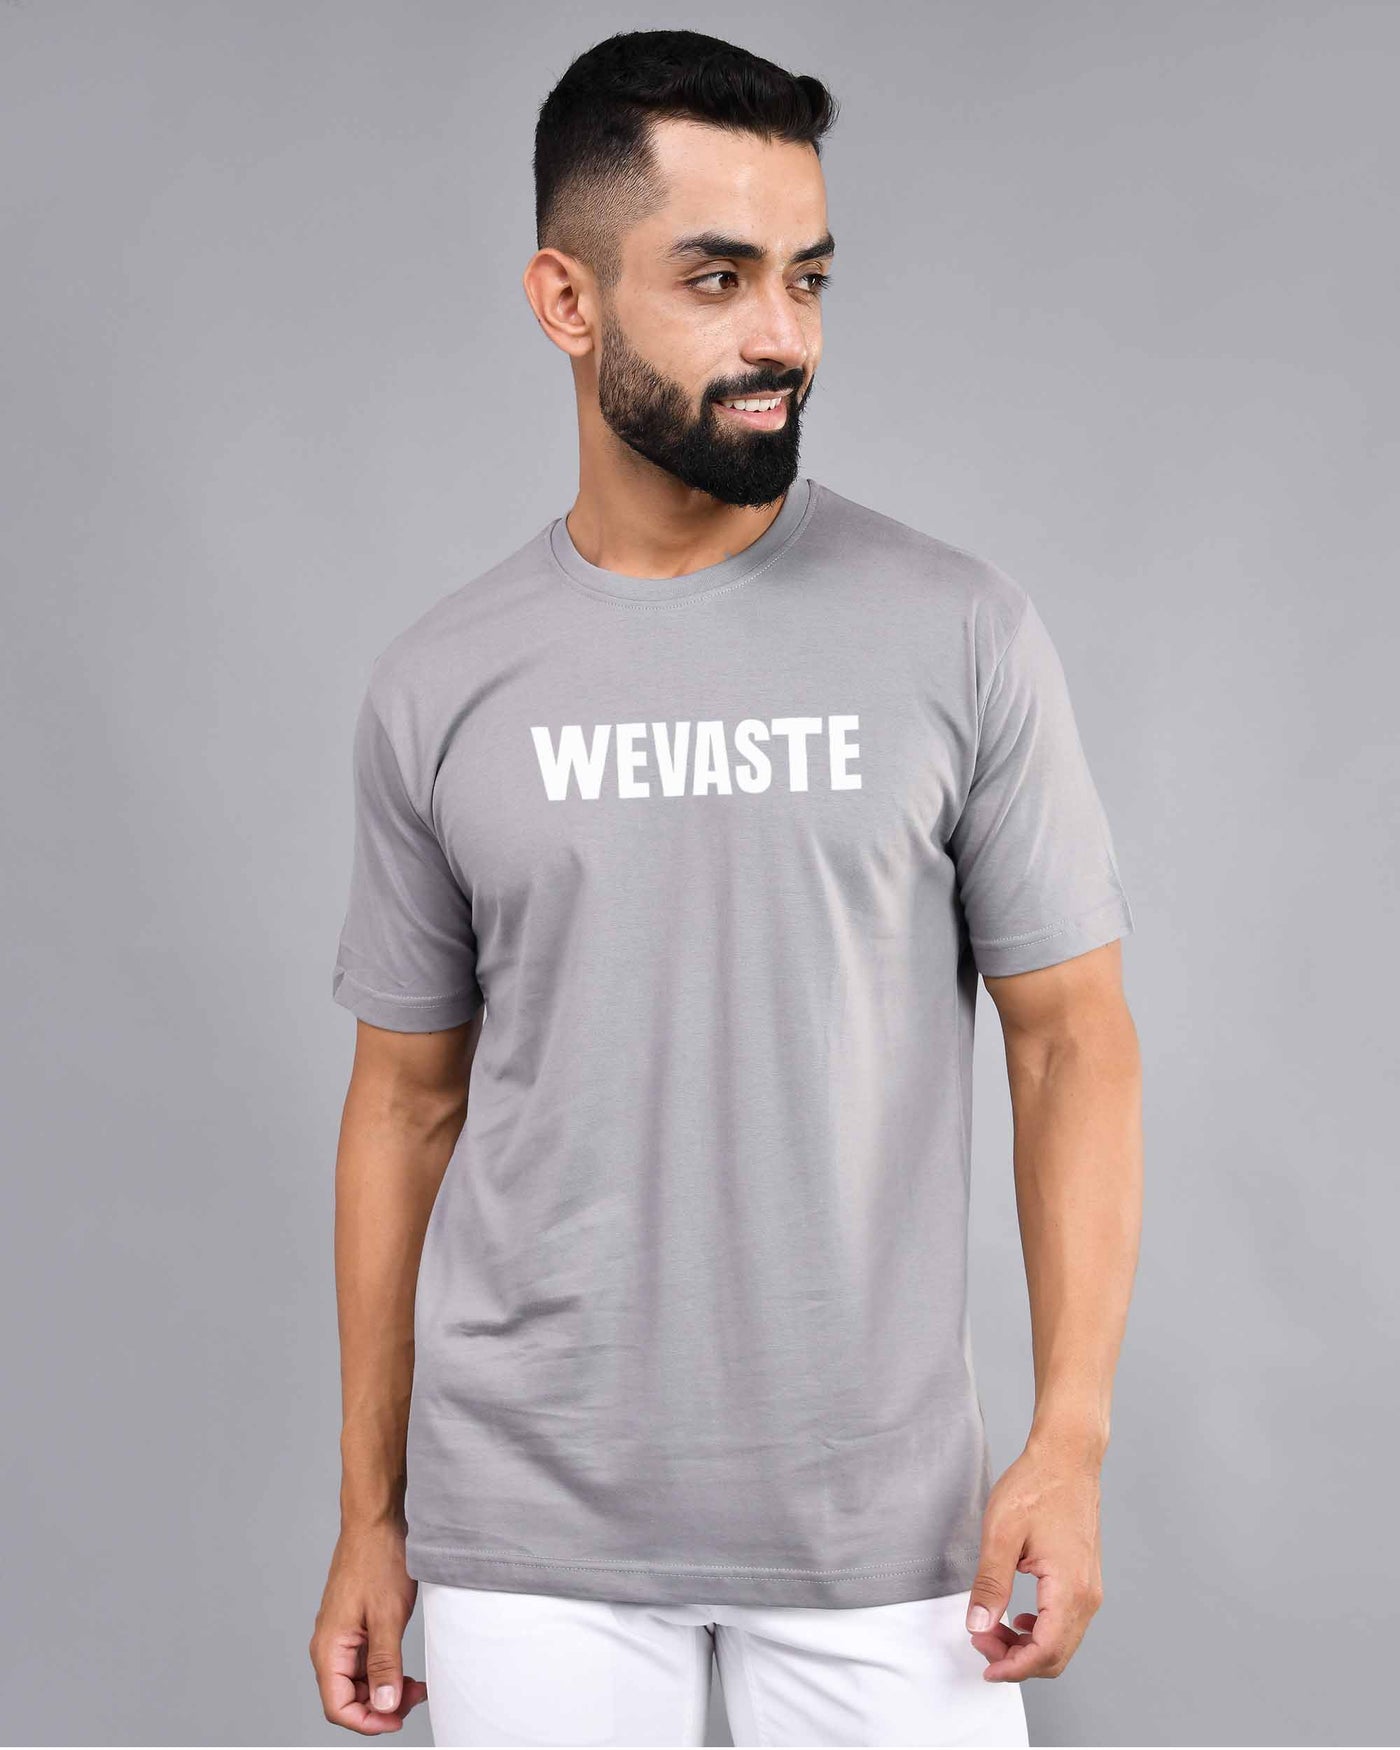 Wevaste Printed Steel Gray T-shirt